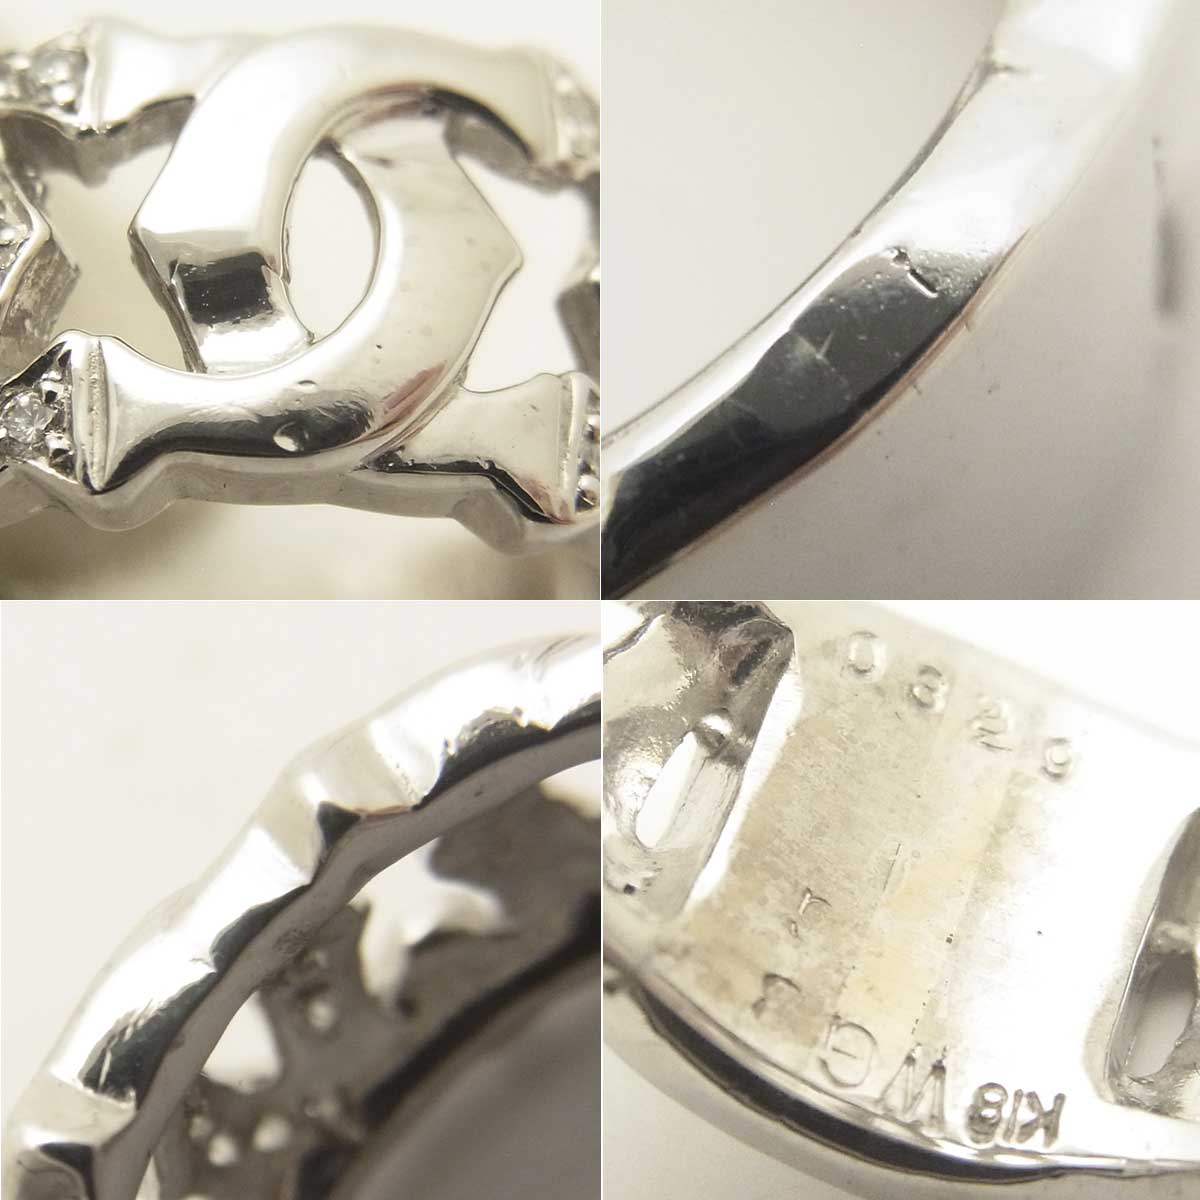 K18WG ダイヤモンド 指輪 13.5号 新品仕上げ済 SAランク シルバーカラー